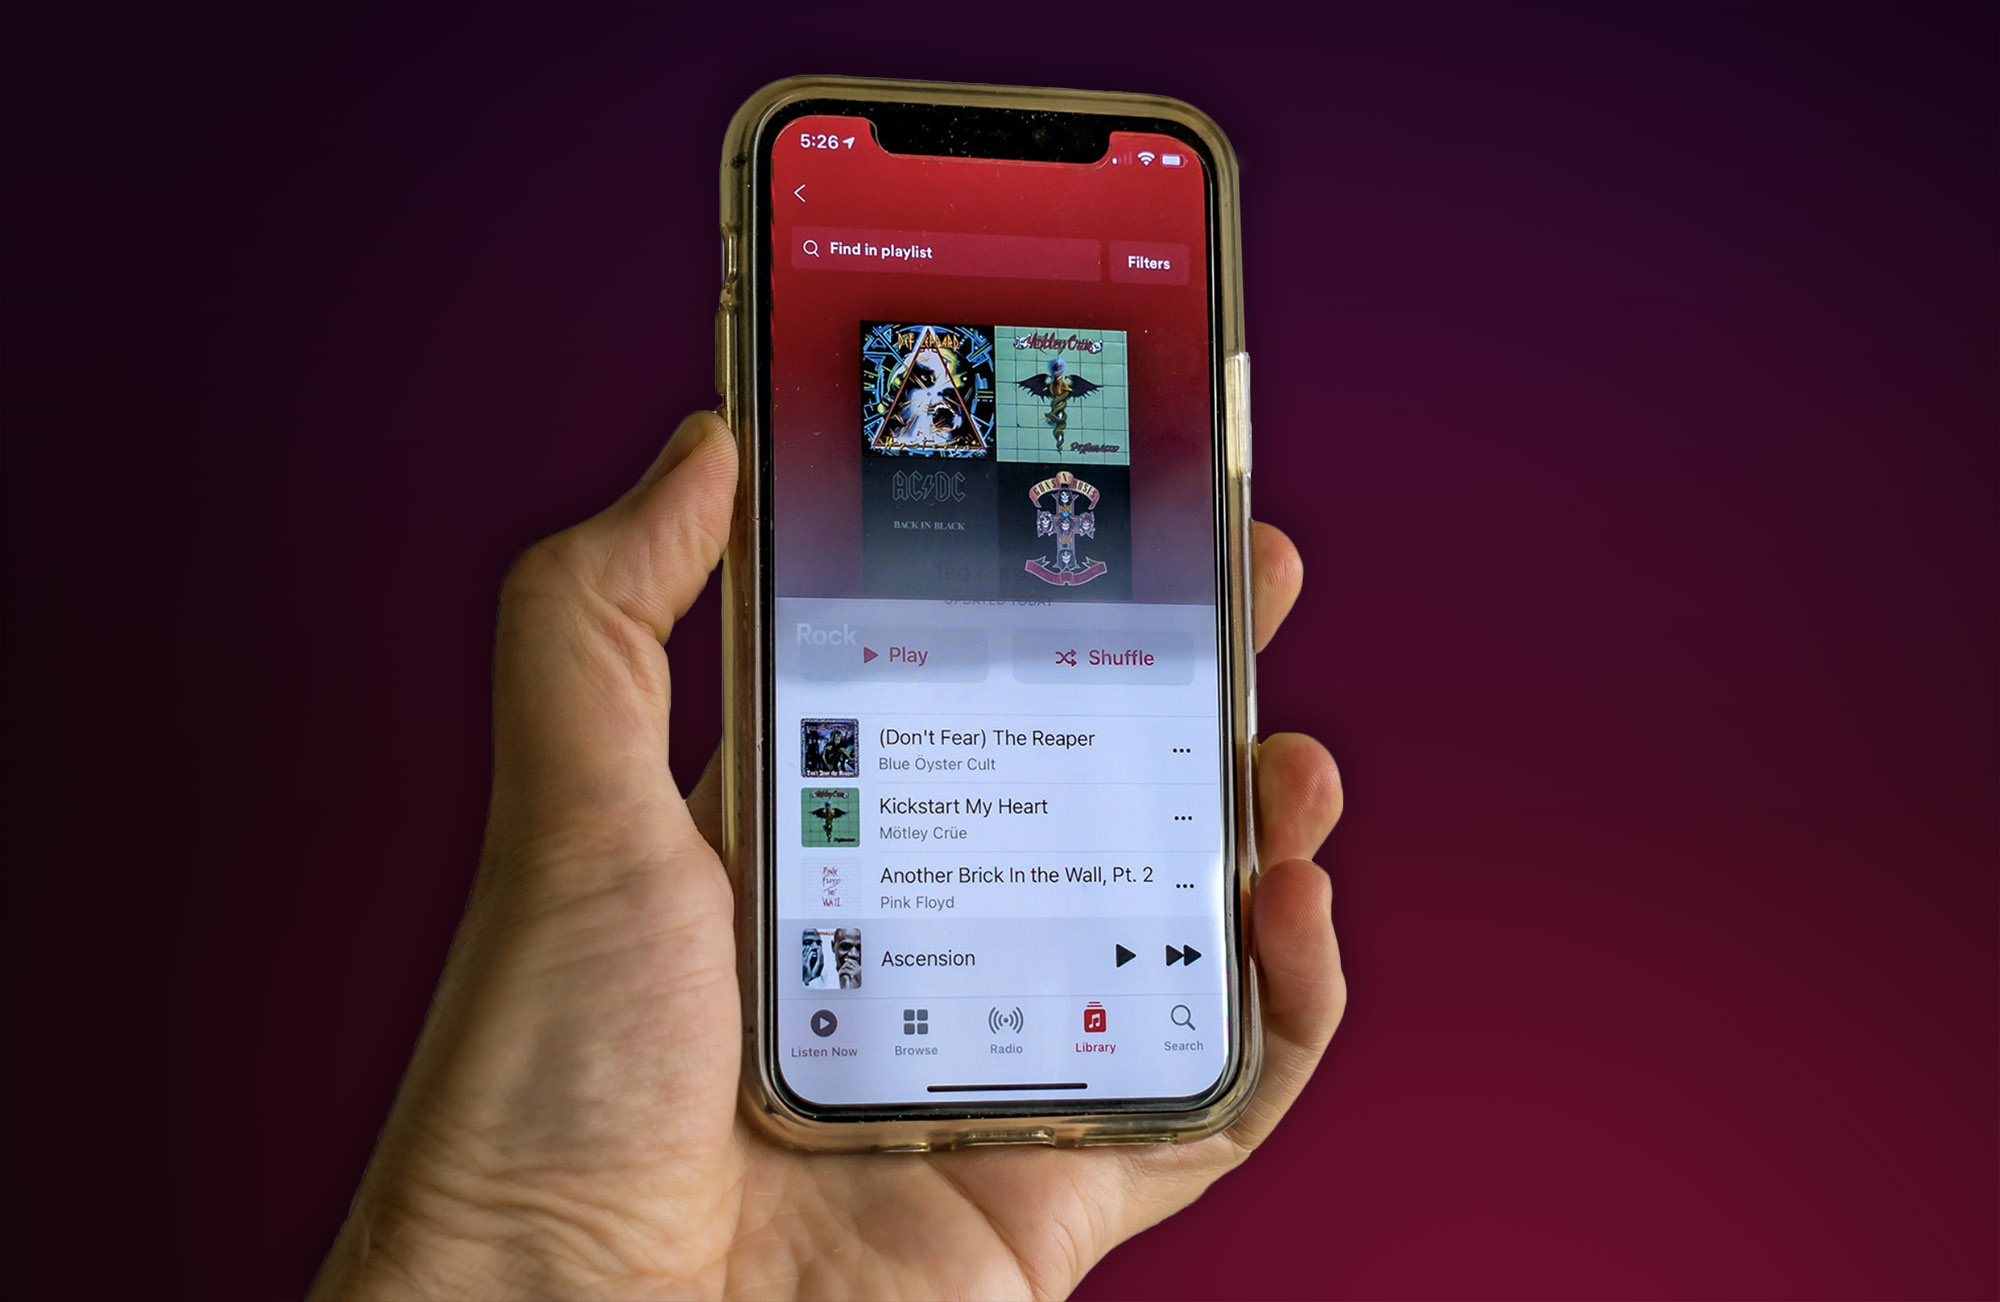 Go:Audio - Apple Music